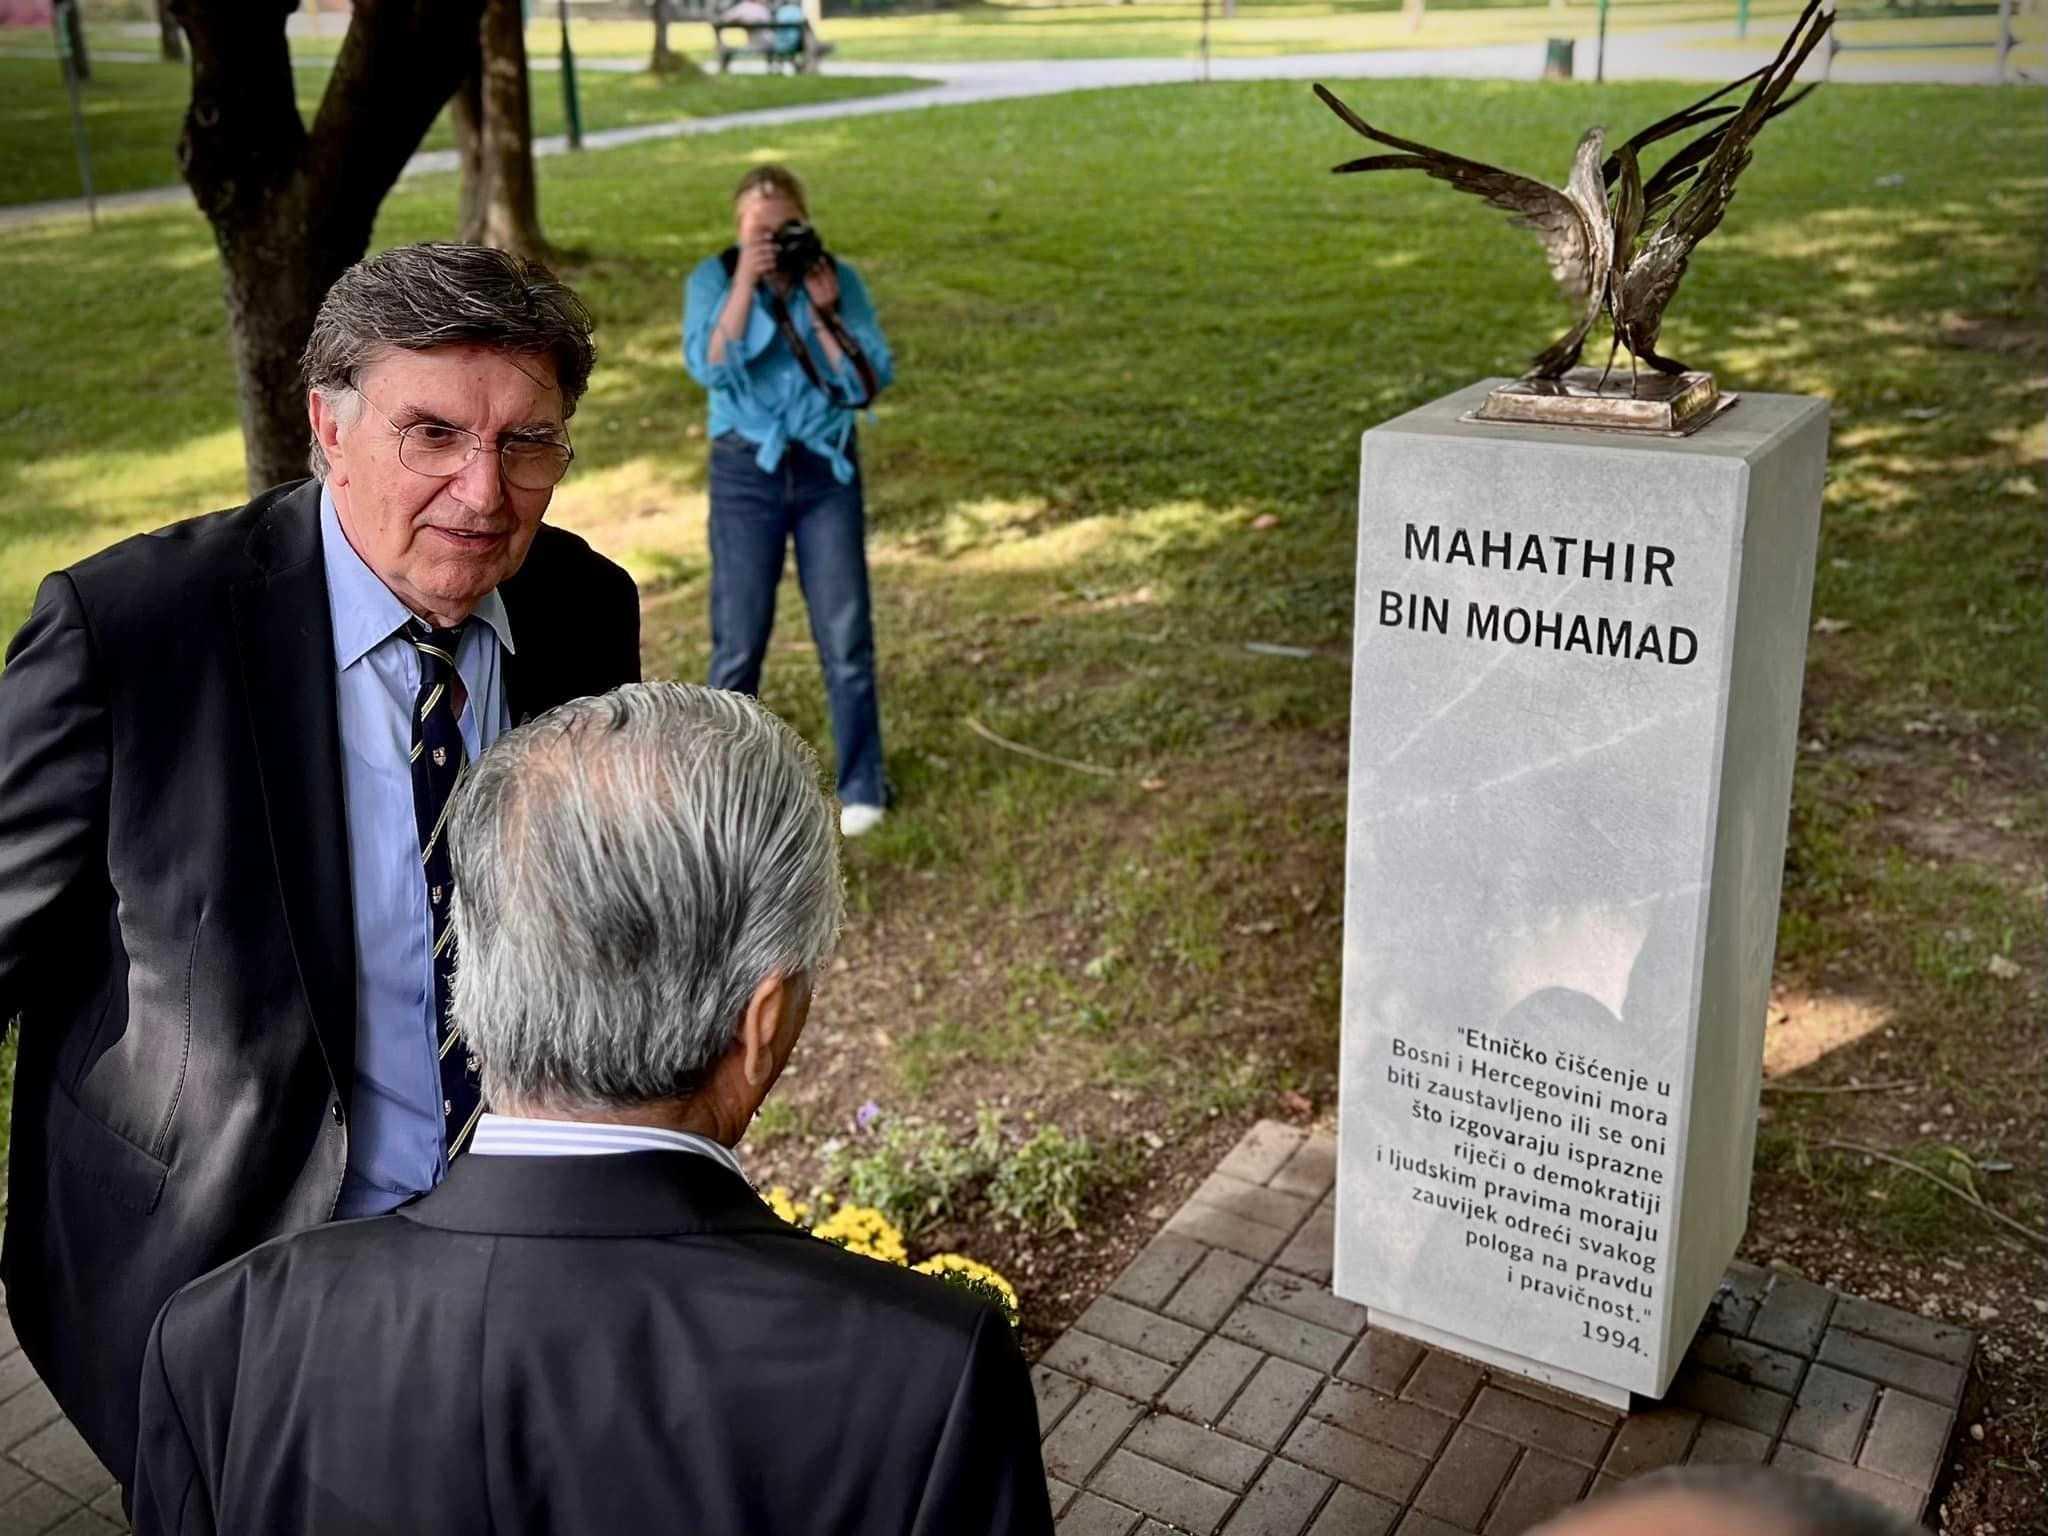 Mahathir melawat monumen yang didirikan di sebuah taman di Sarajevo, Bosnia dan Herzegovina, sebagai tanda penghormatan kepada beliau atas kelantangannya terhadap negara Balkan semasa pembersihan etnik pada awal 1990-an. Prasasti itu adalah terjemahan daripada ucapannya pada tahun 1994: 'Pembersihan etnik Bosnia dan Herzegovina mesti dihentikan atau mereka yang hanya bercakap kosong tentang demokrasi dan hak asasi manusia berhenti daripada berpura-pura pada kebenaran’. Gambar: Dr Mahathir Mohamad